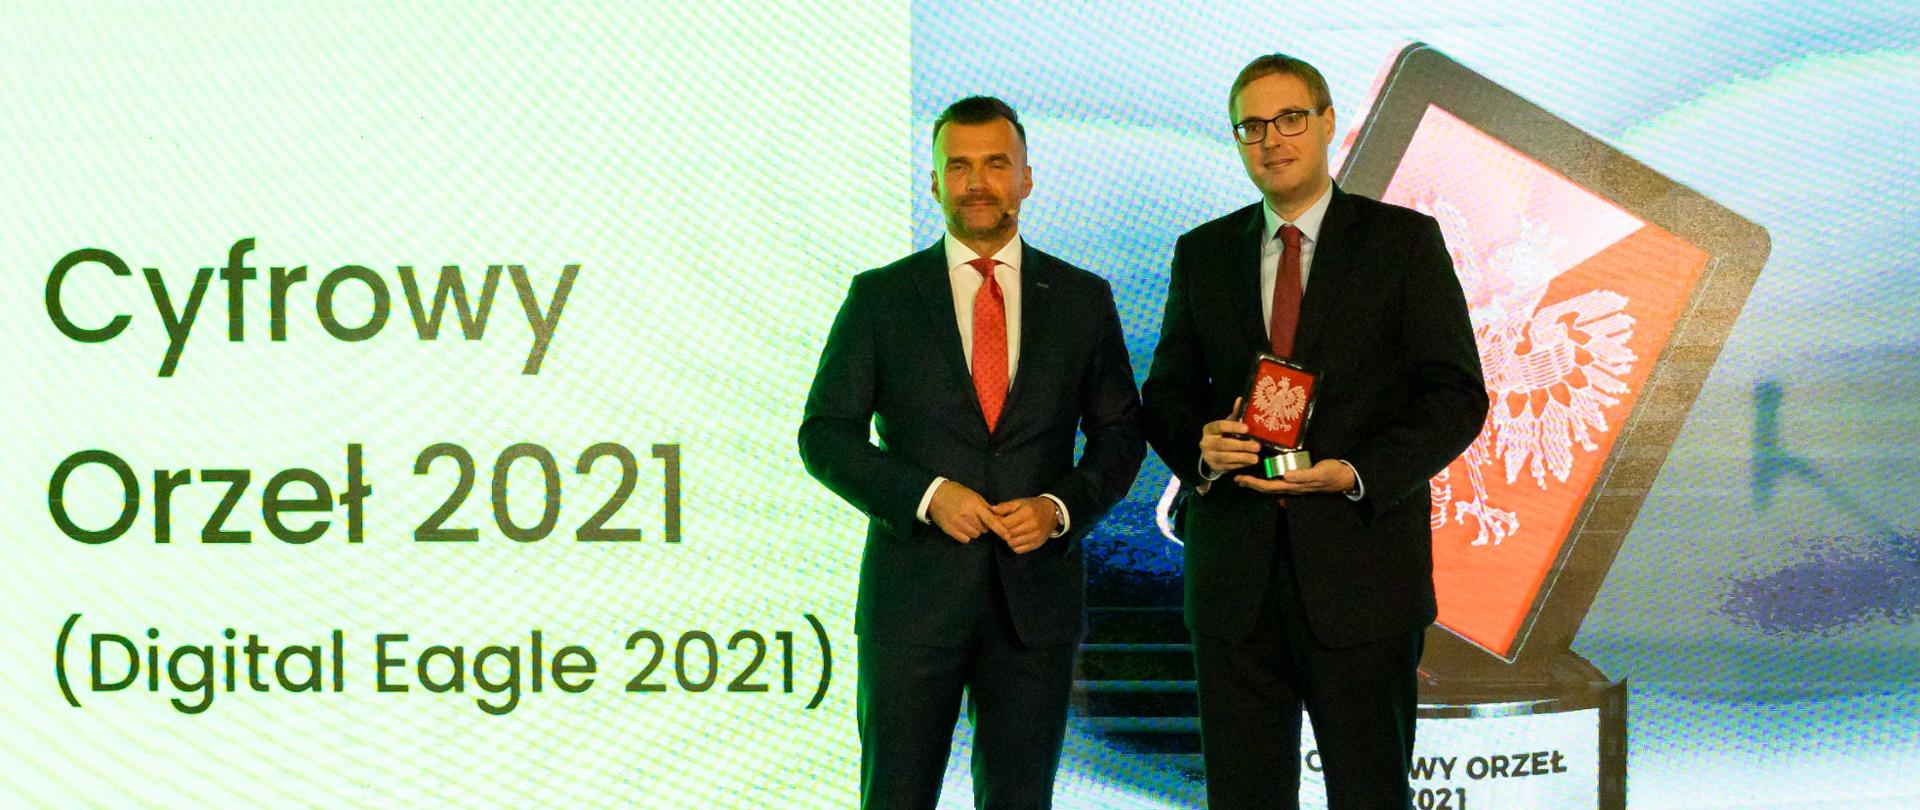 Prezes Związku Cyfrowa Polska Michał Kanownik i minister Jan Sarnowski a obok napis Cyfrowy Orzeł 2021 (Digital Eagle 2021) 